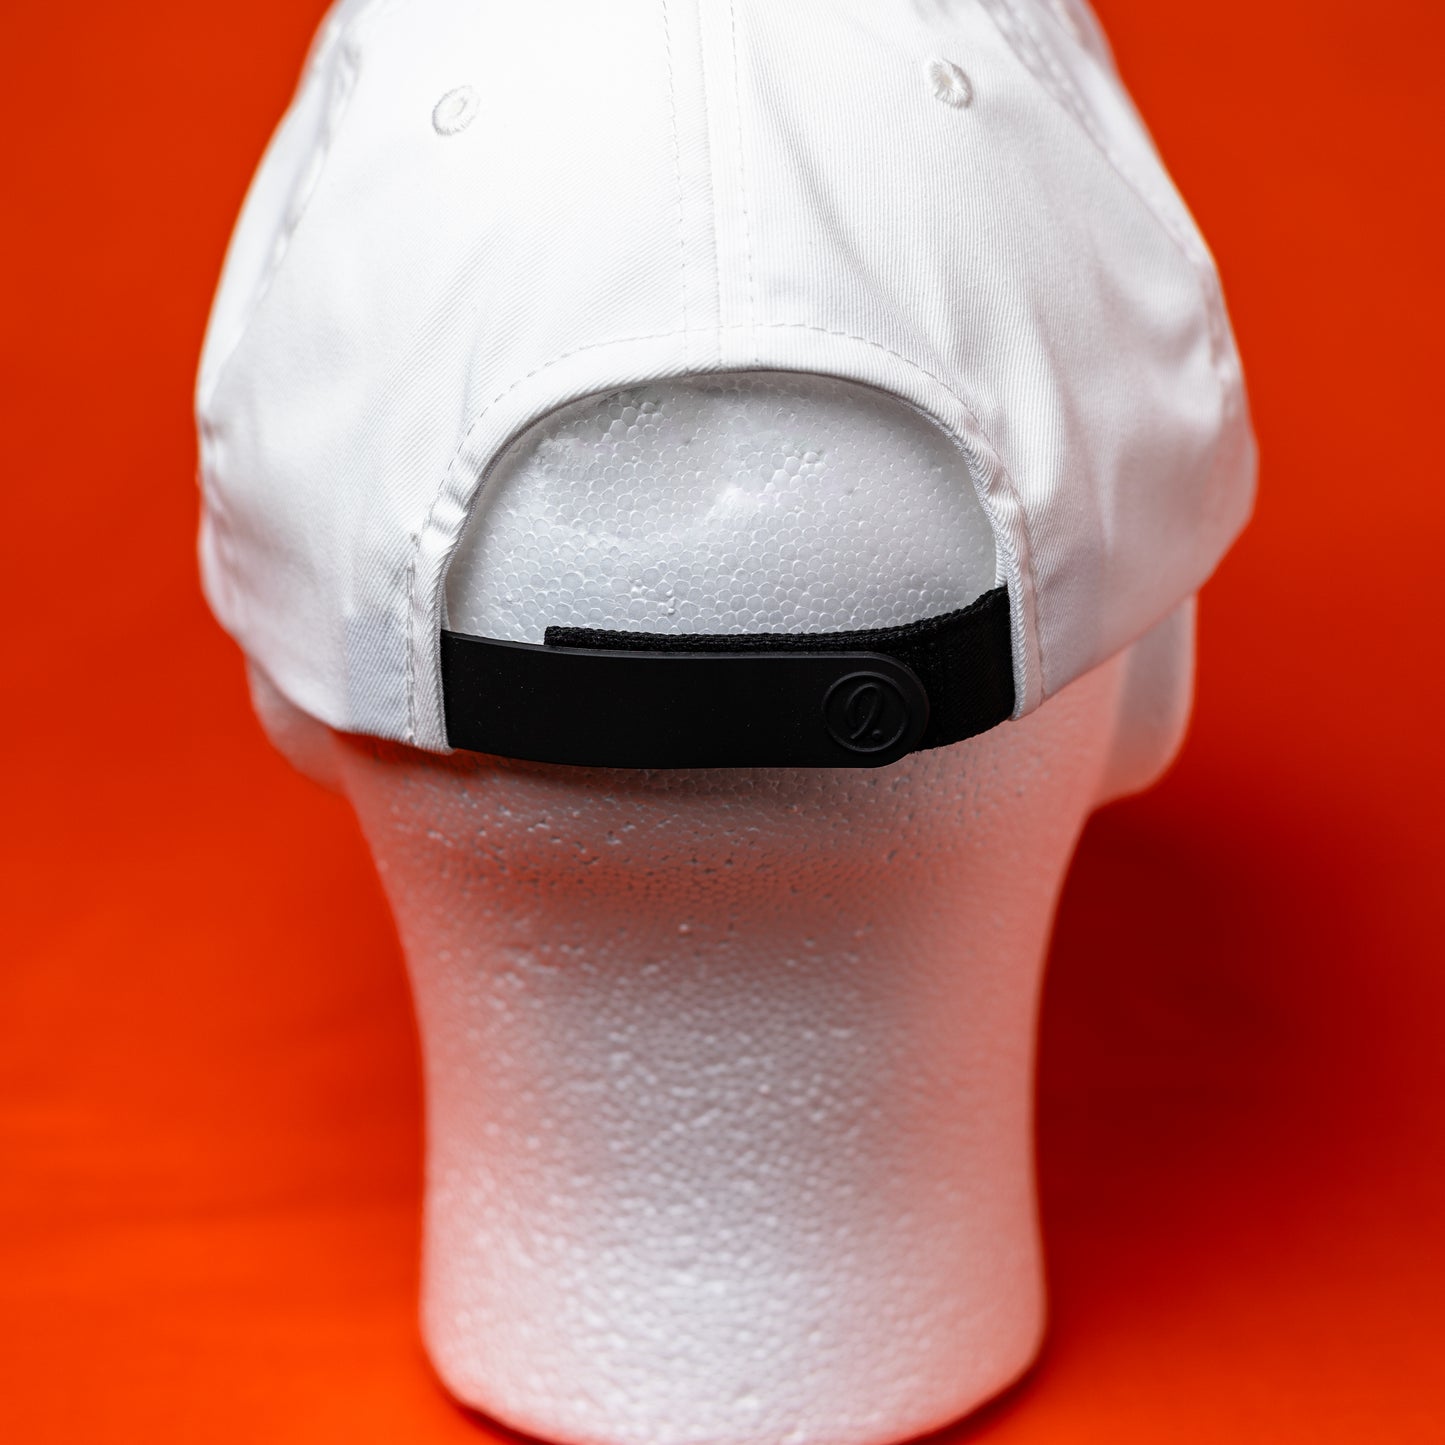 Mid-Crown Cincy Hat - White